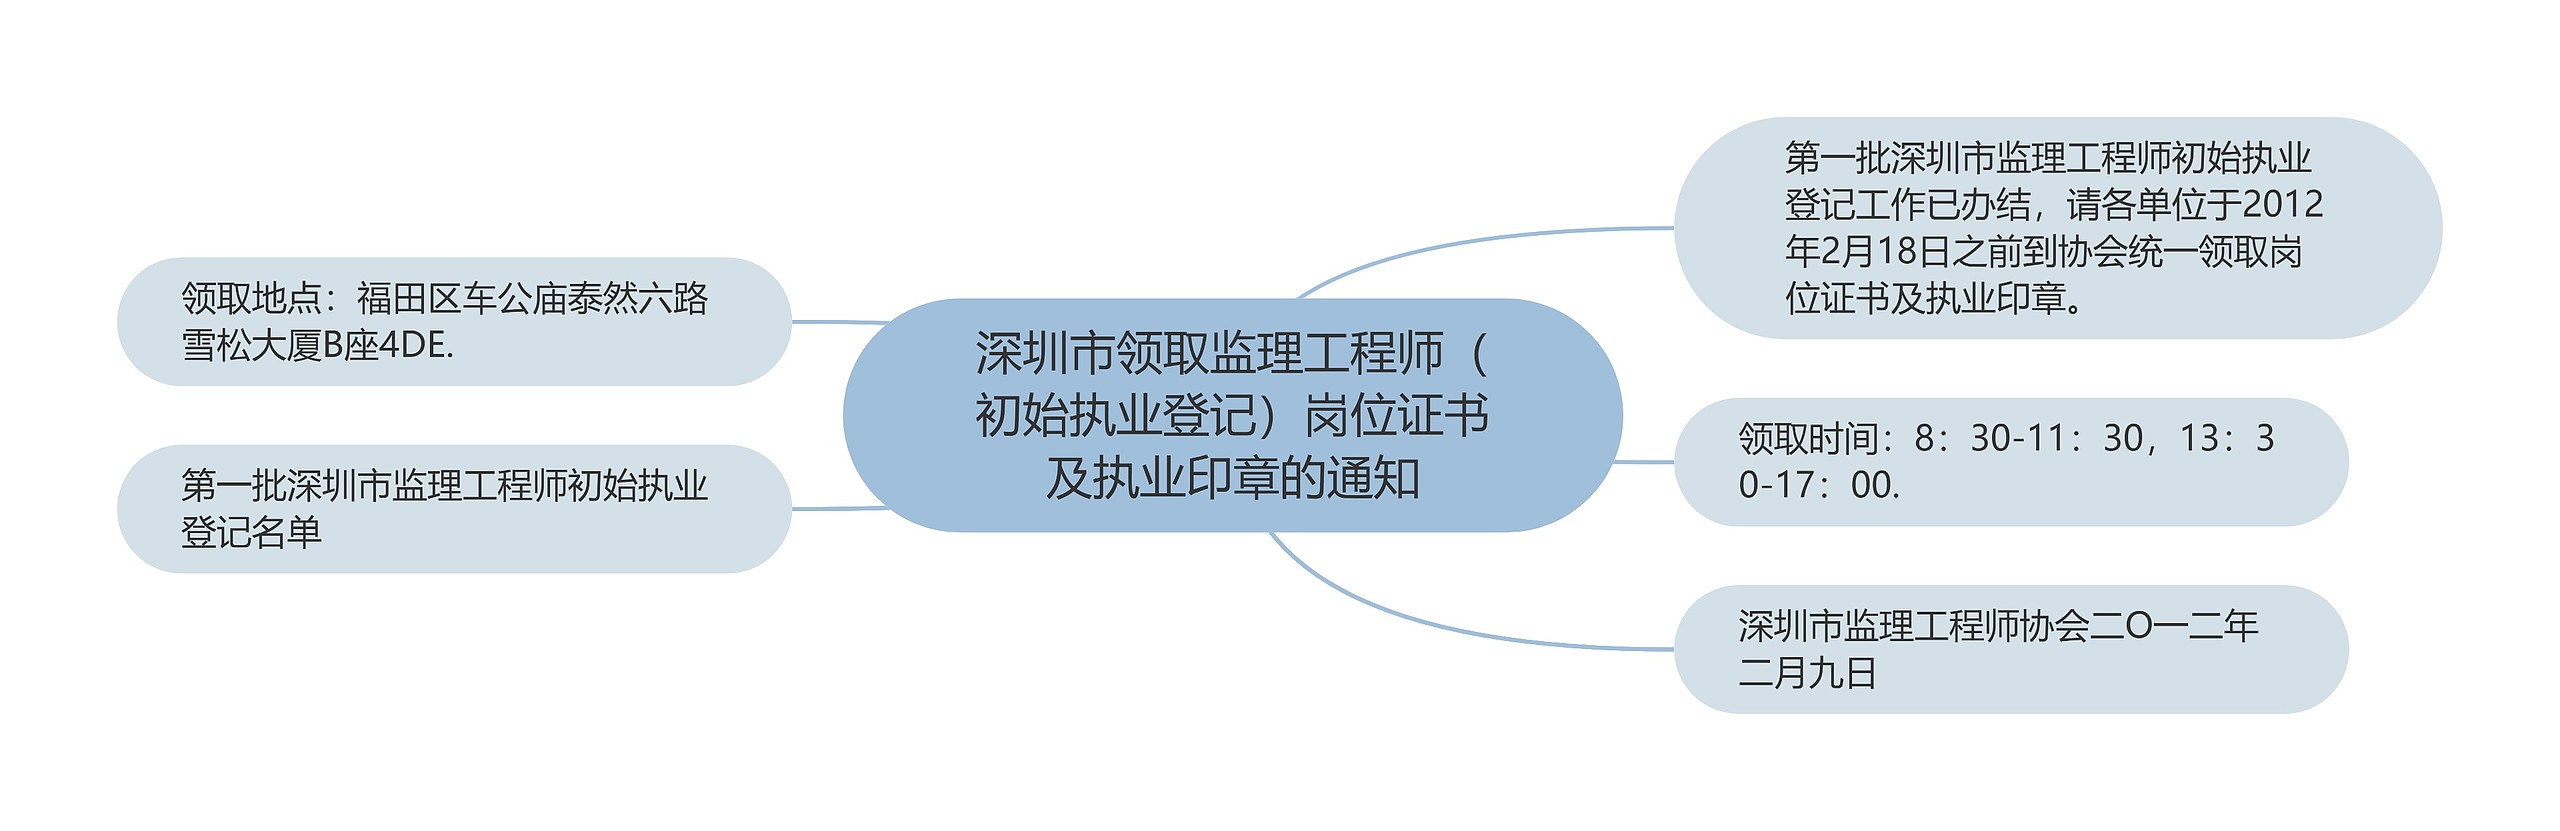 深圳市领取监理工程师（初始执业登记）岗位证书及执业印章的通知